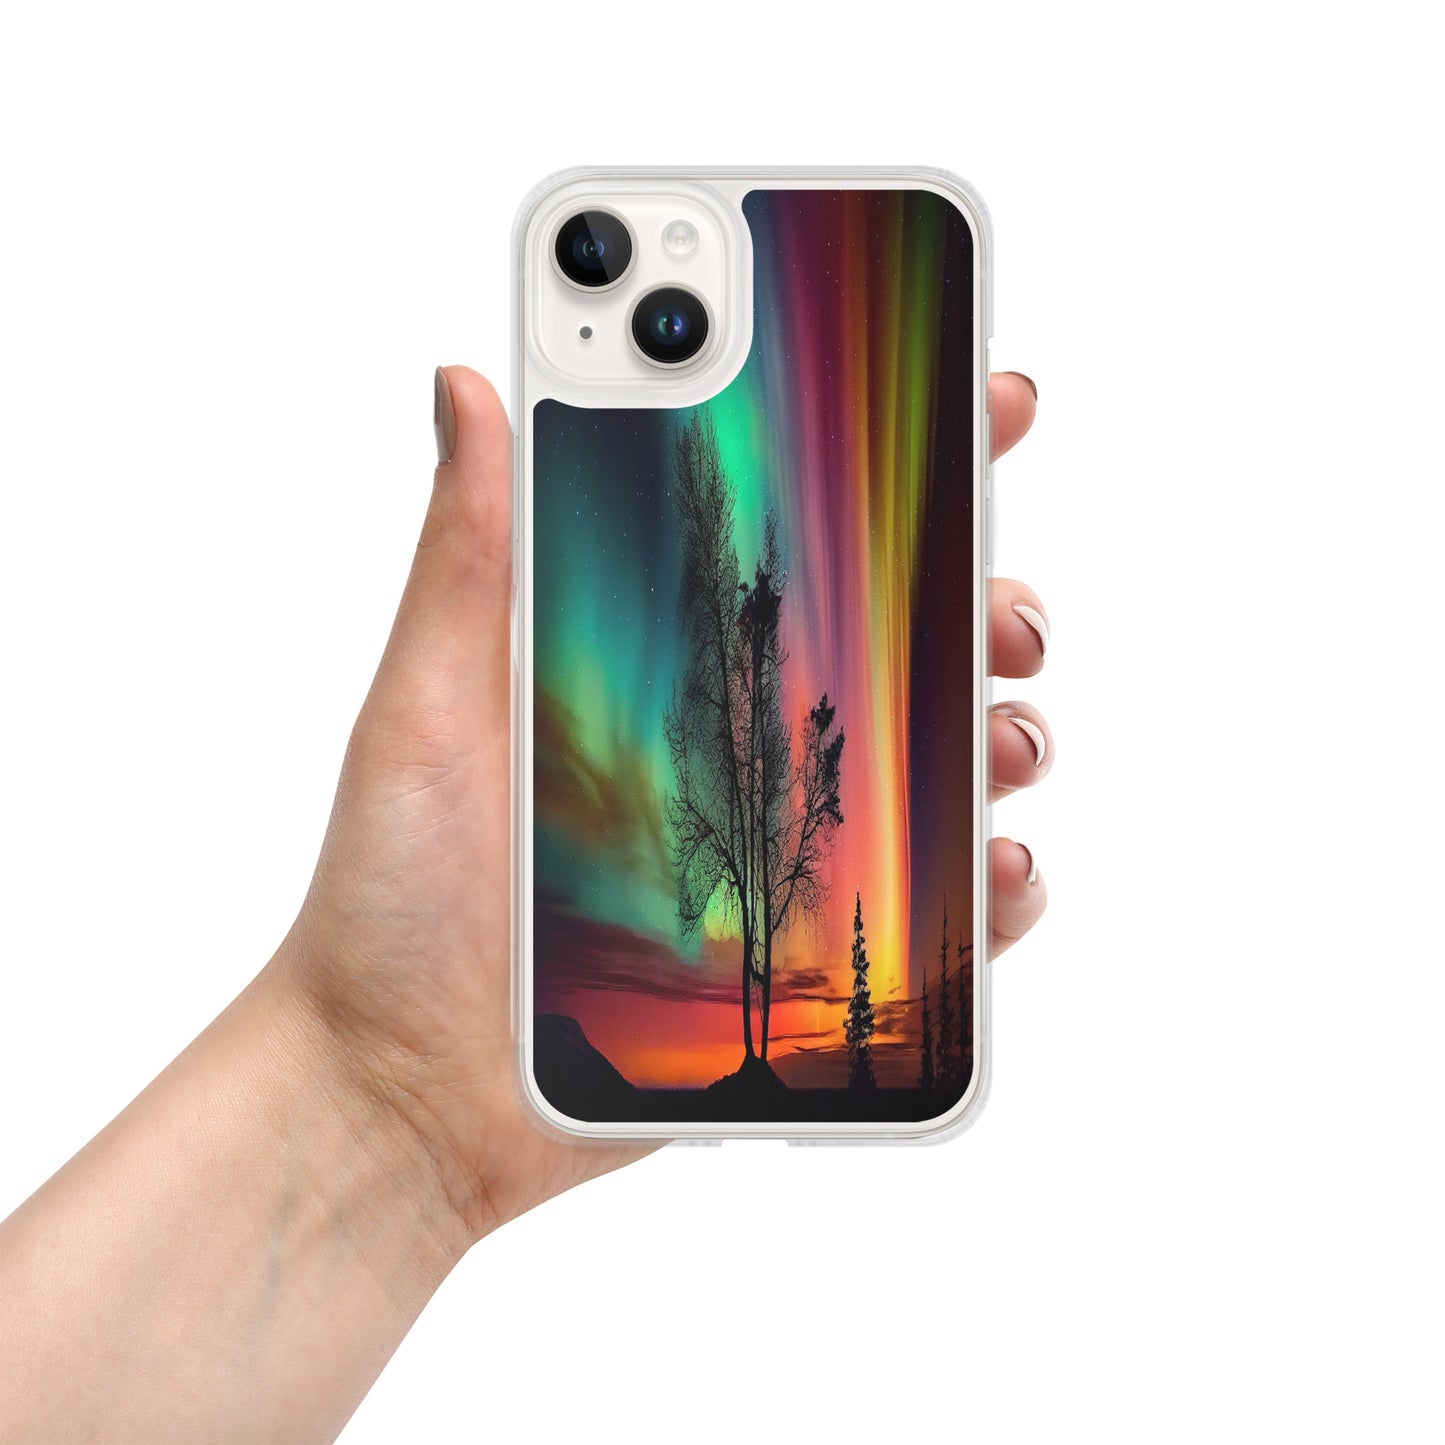 Unique Aurora Borealis iPhone Cover Case - Northern Light Phone Cover Case - Clear Case for iPhone - Perfect Aurora Lovers Gift 11